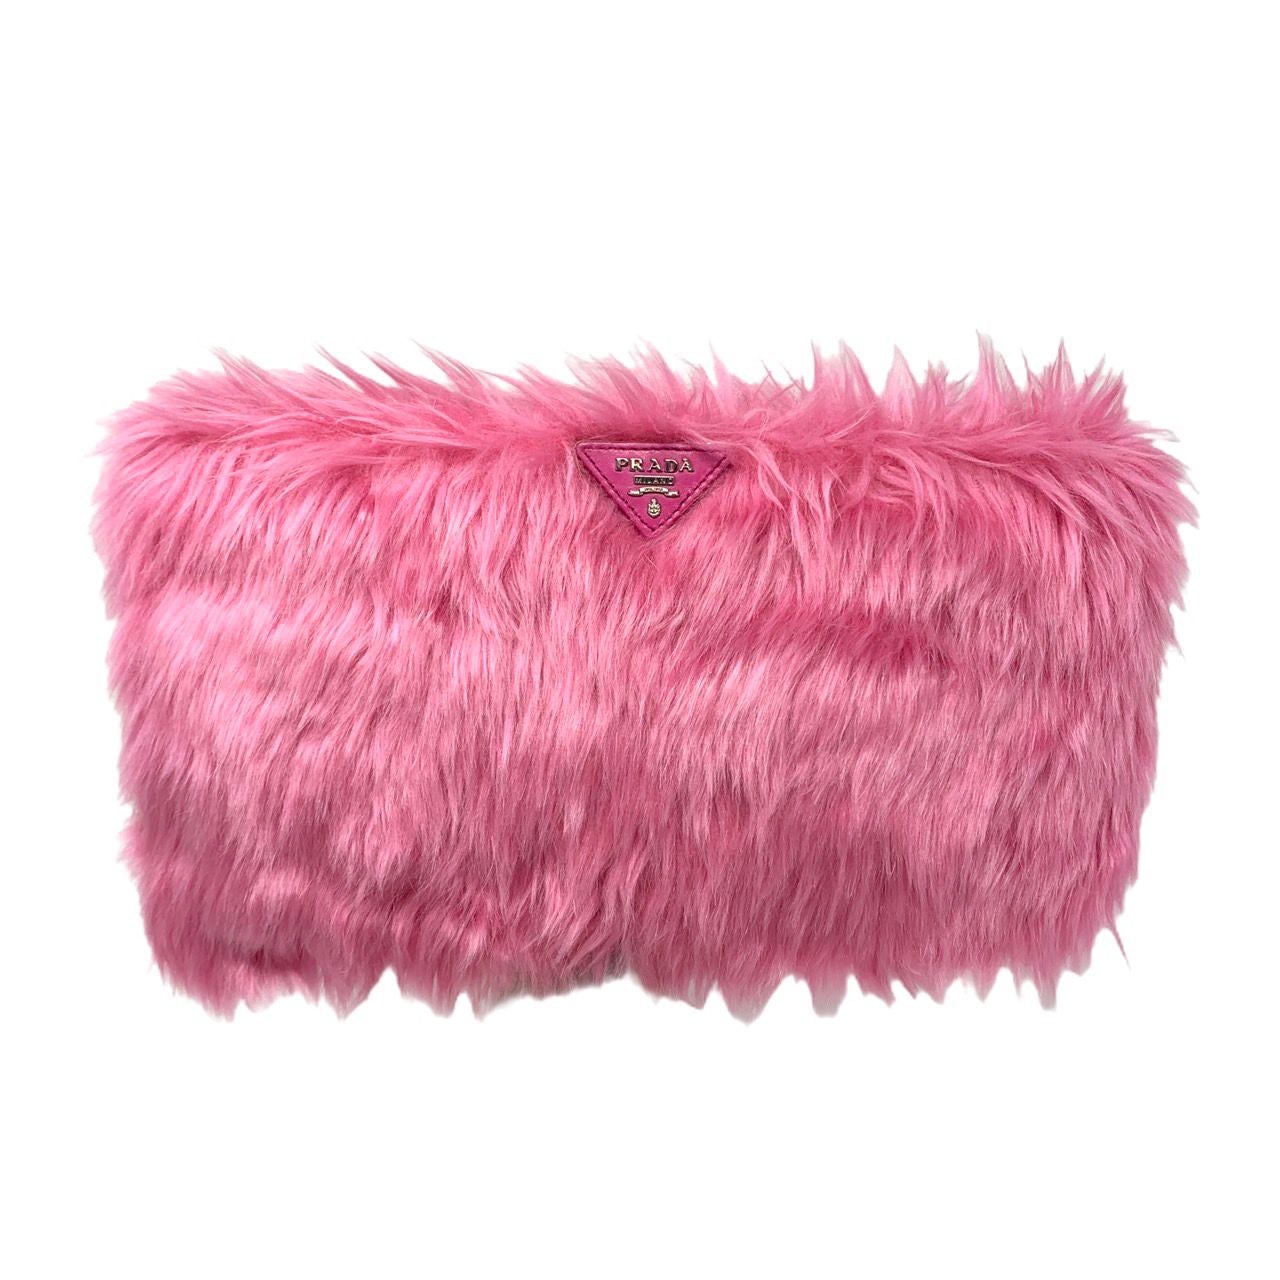 Prada Fur Clutch Bag in Pink